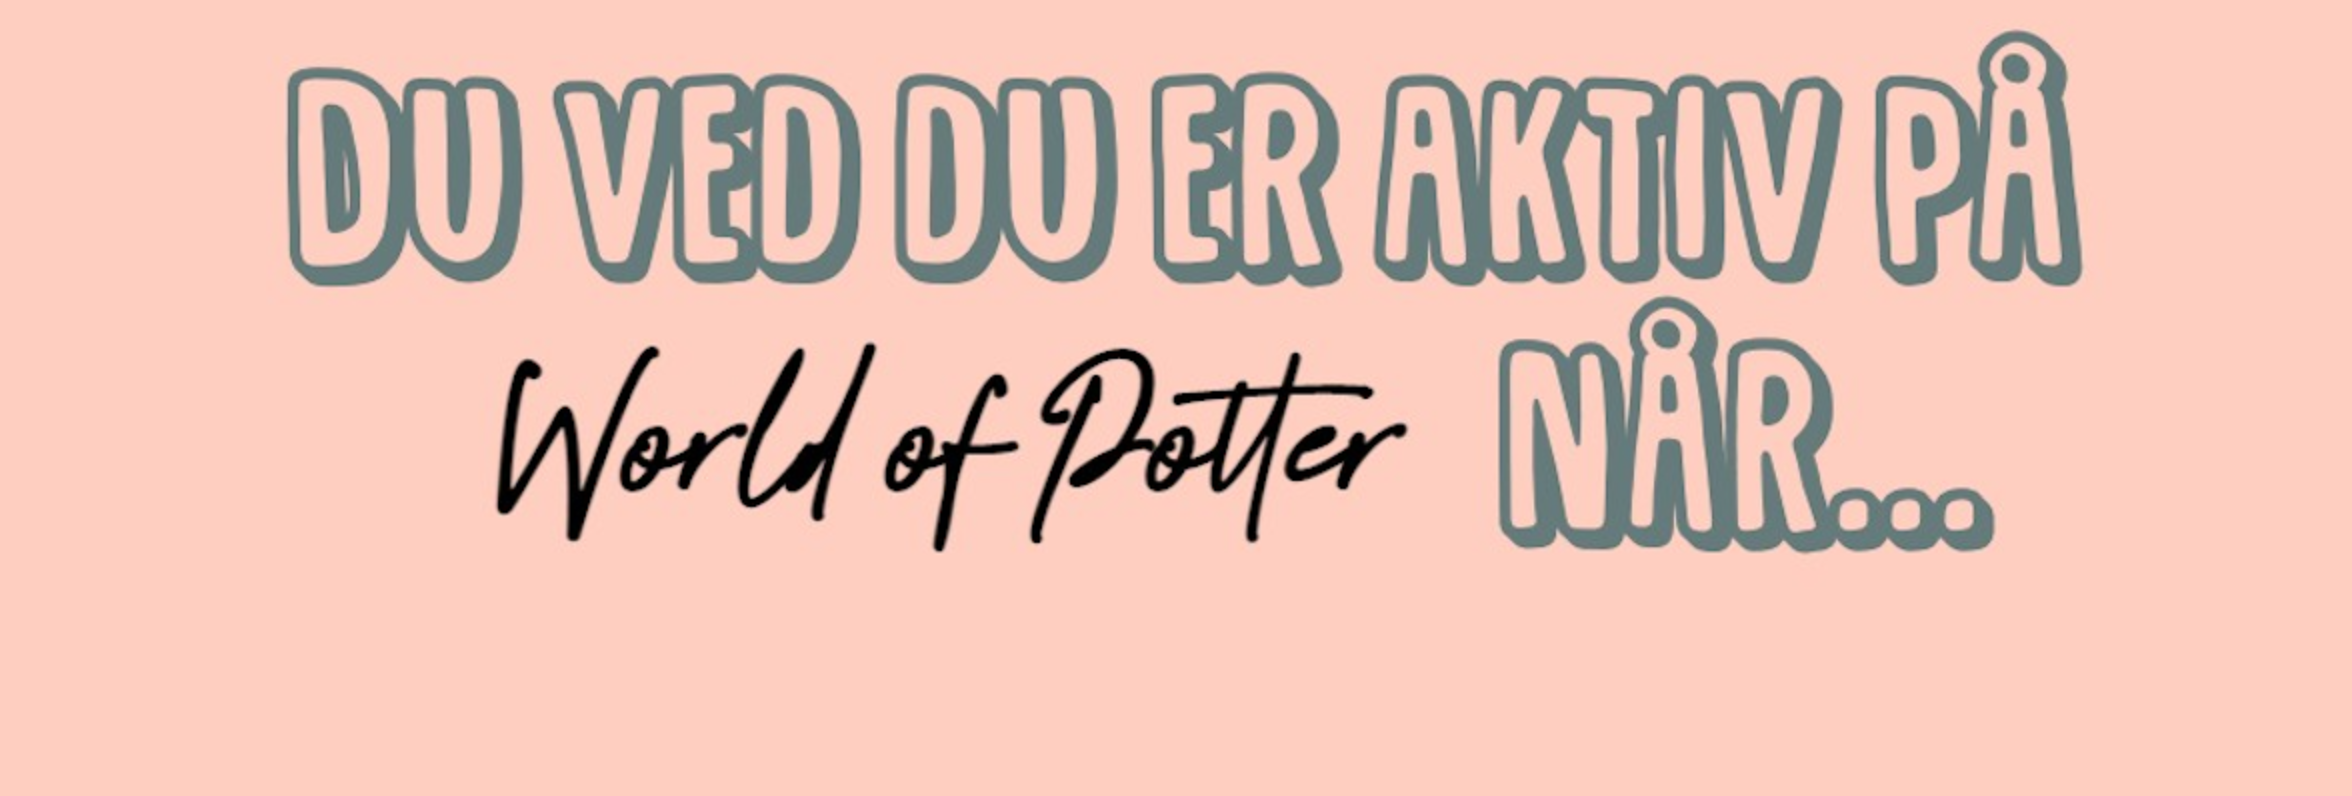 Du ved du er aktiv på World of Potter når... Part 1